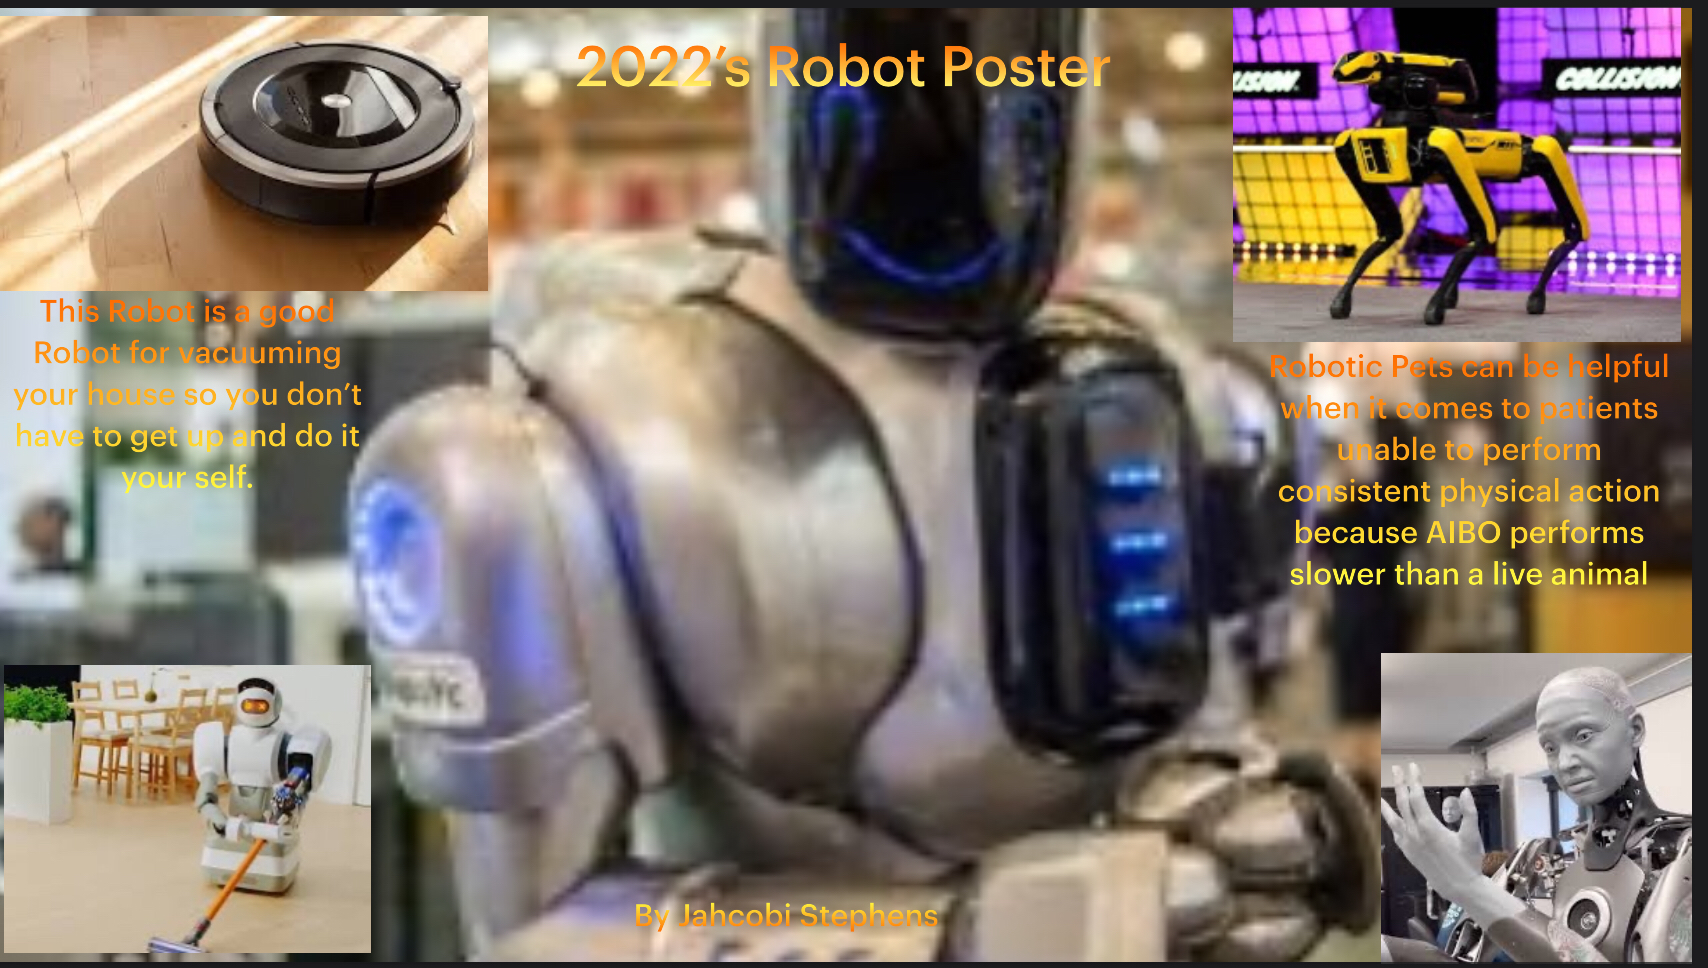 Copy of Robots & Society (2_08_2022 at 2_13 PM).png